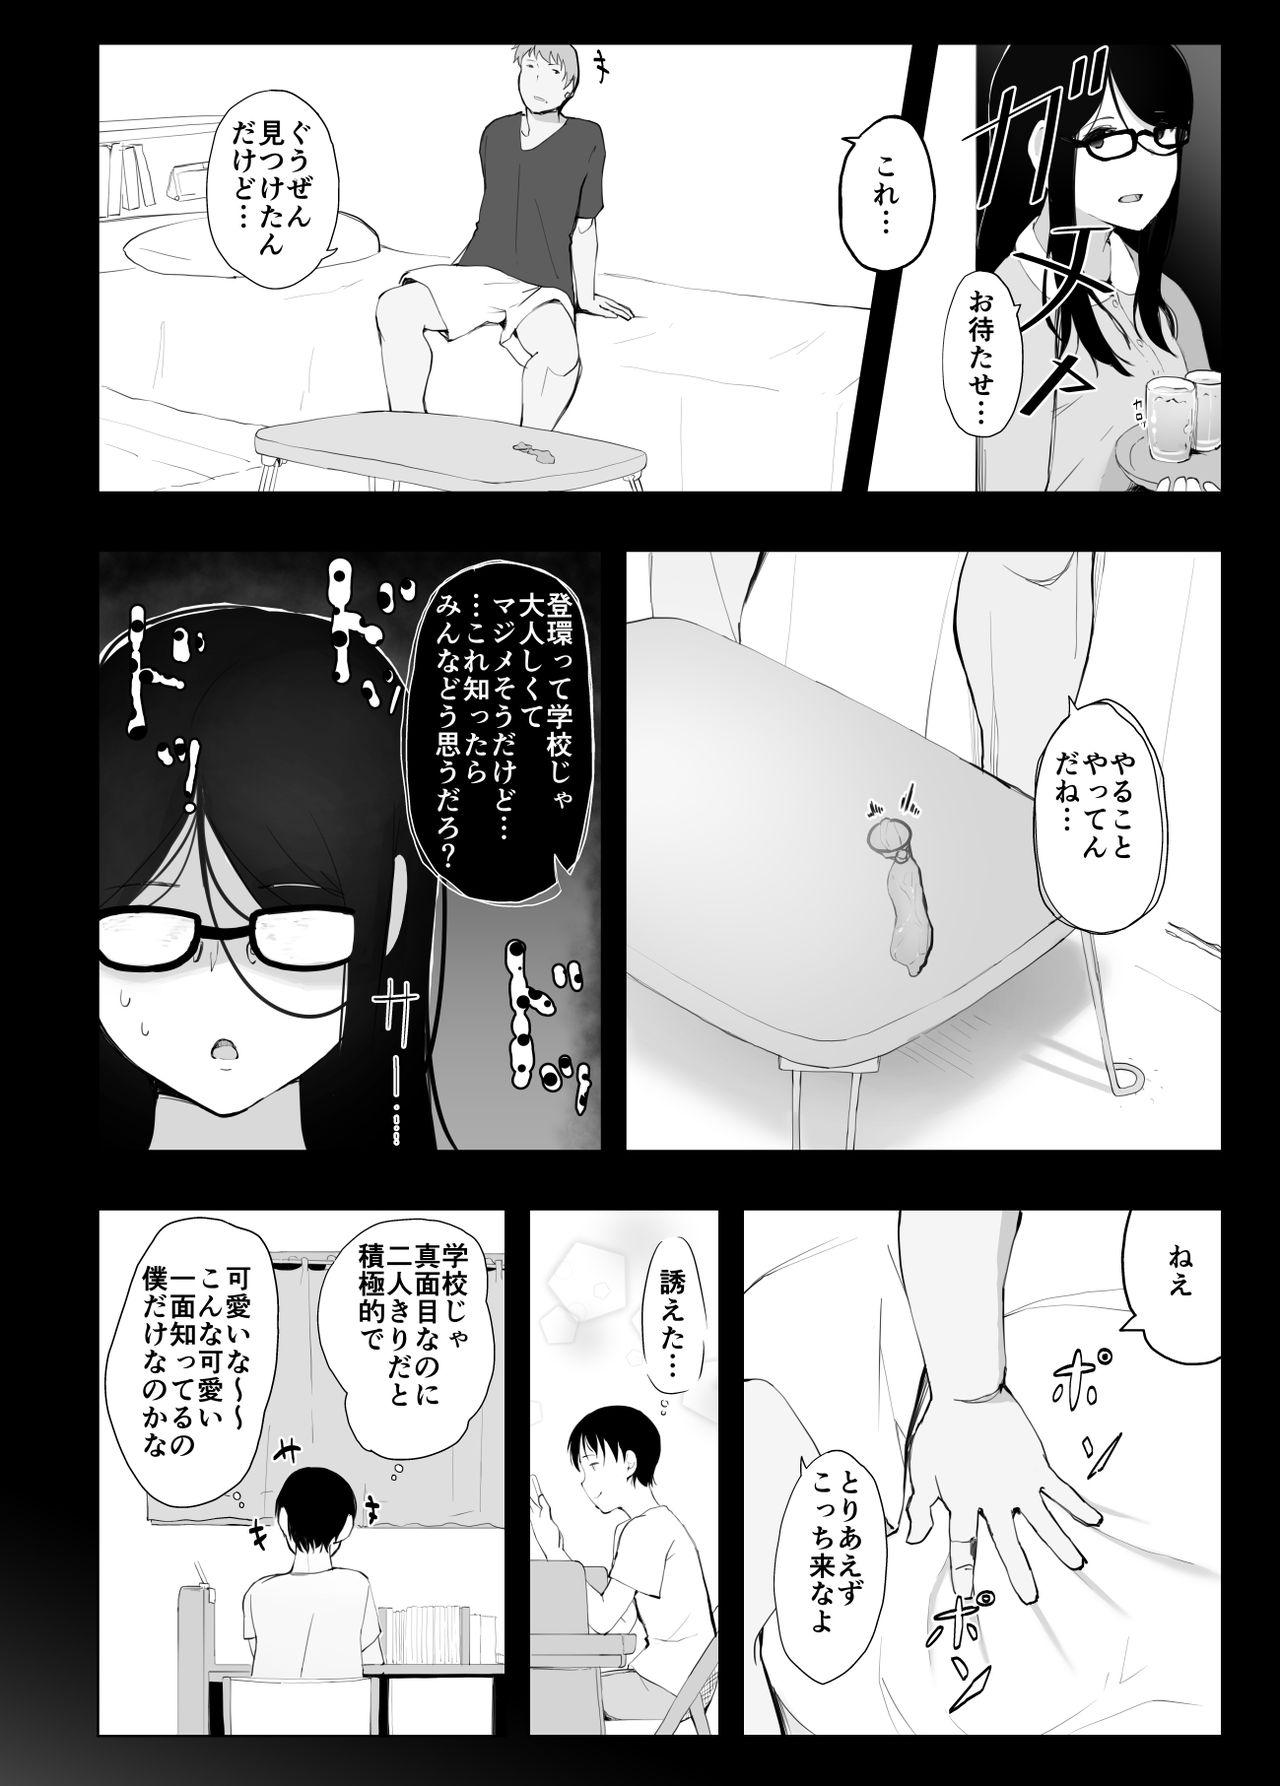 Animation 彼女と先輩が家族になった日 - Original Cei - Page 10